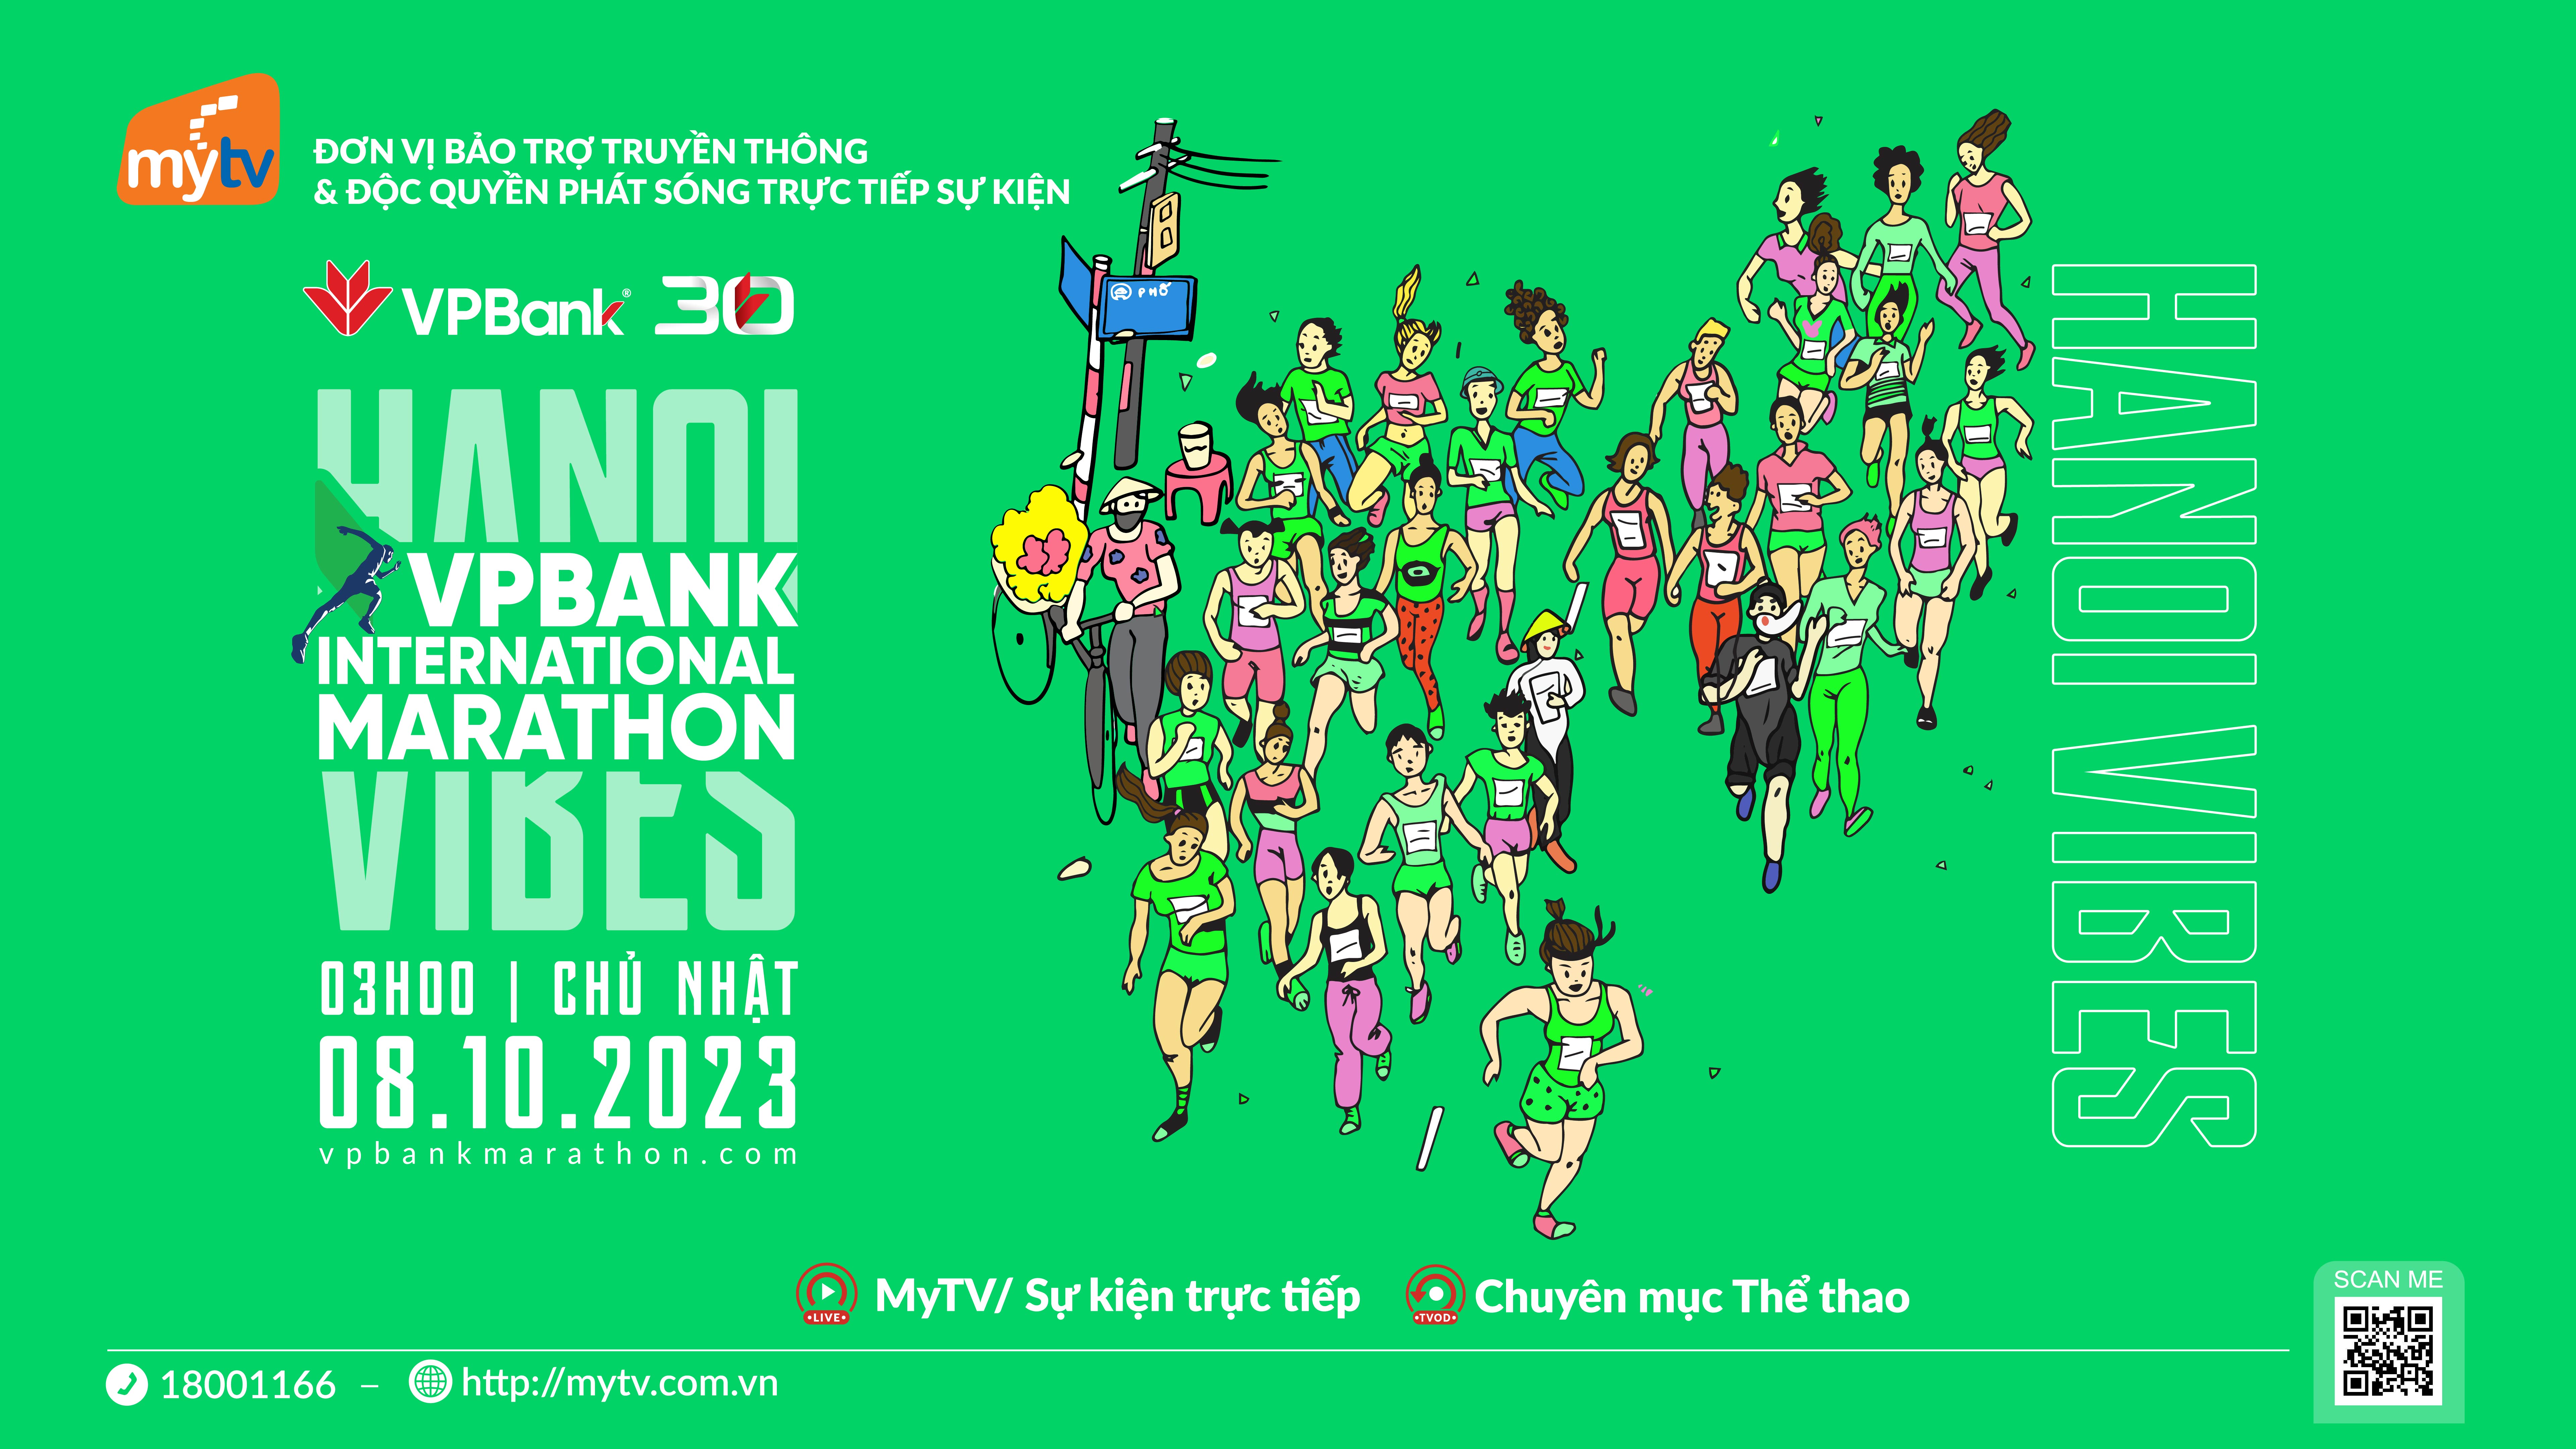 Truyền hình MyTV bảo trợ truyền thông & độc quyền phát trực tiếp giải Marathon Quốc tế Hà Nội VPBank 2023